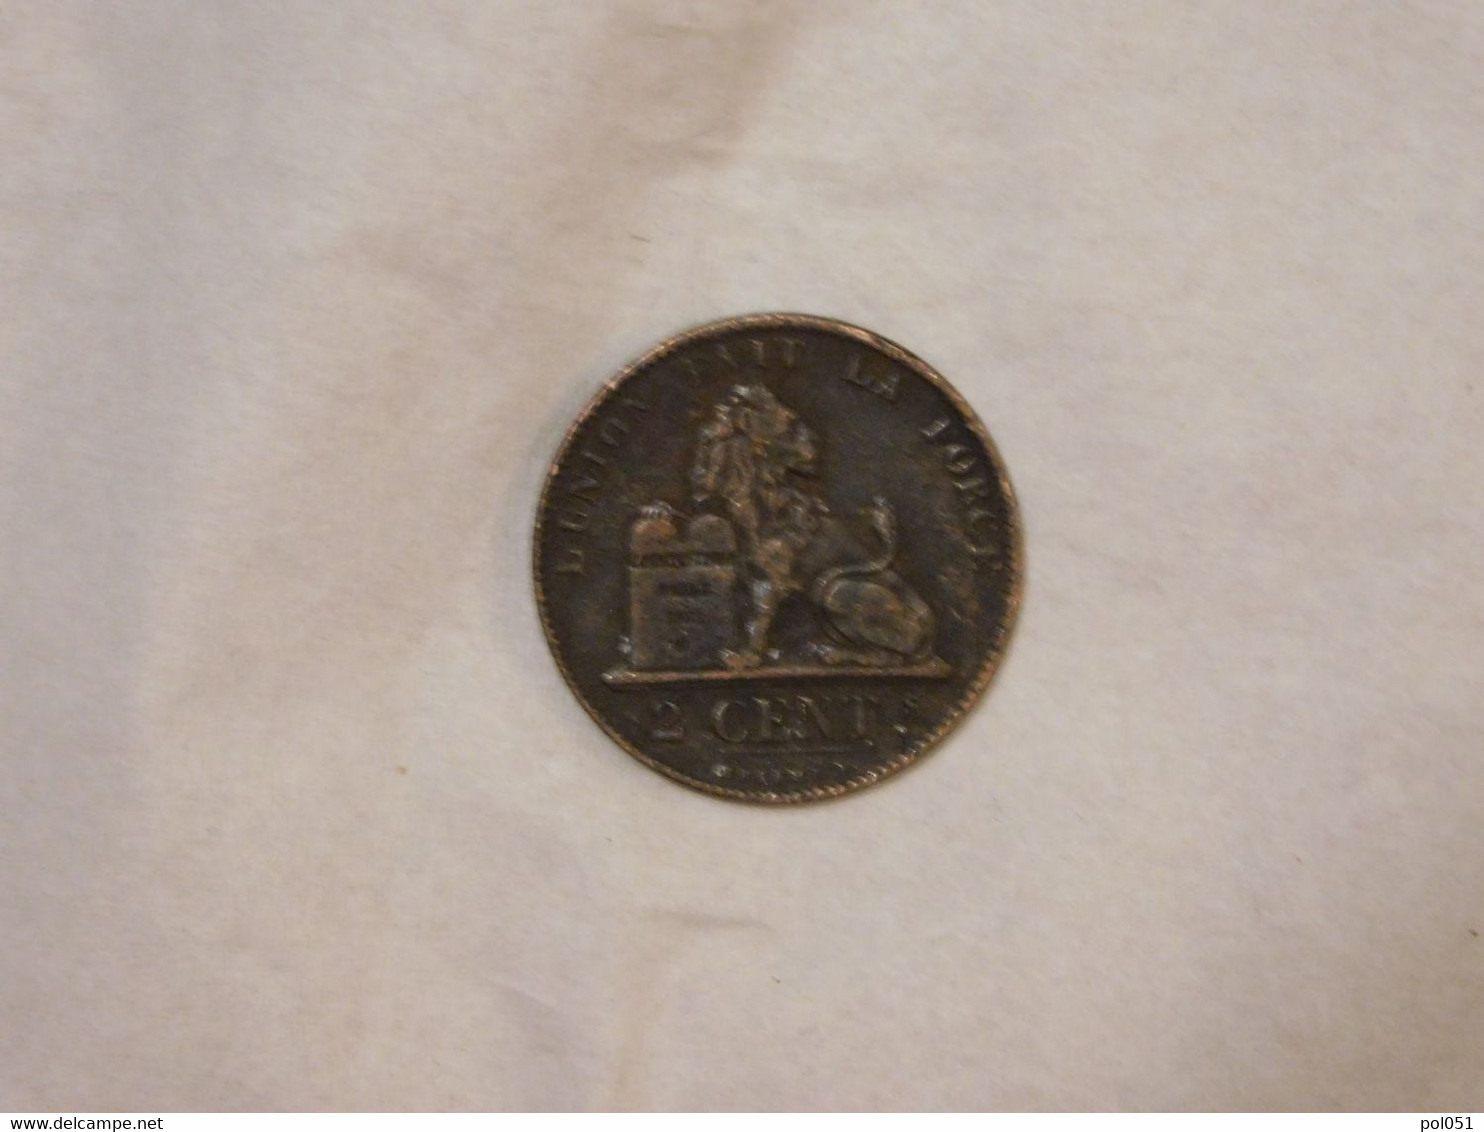 Belgique 2 Cent 1863 Centimes - 2 Cent